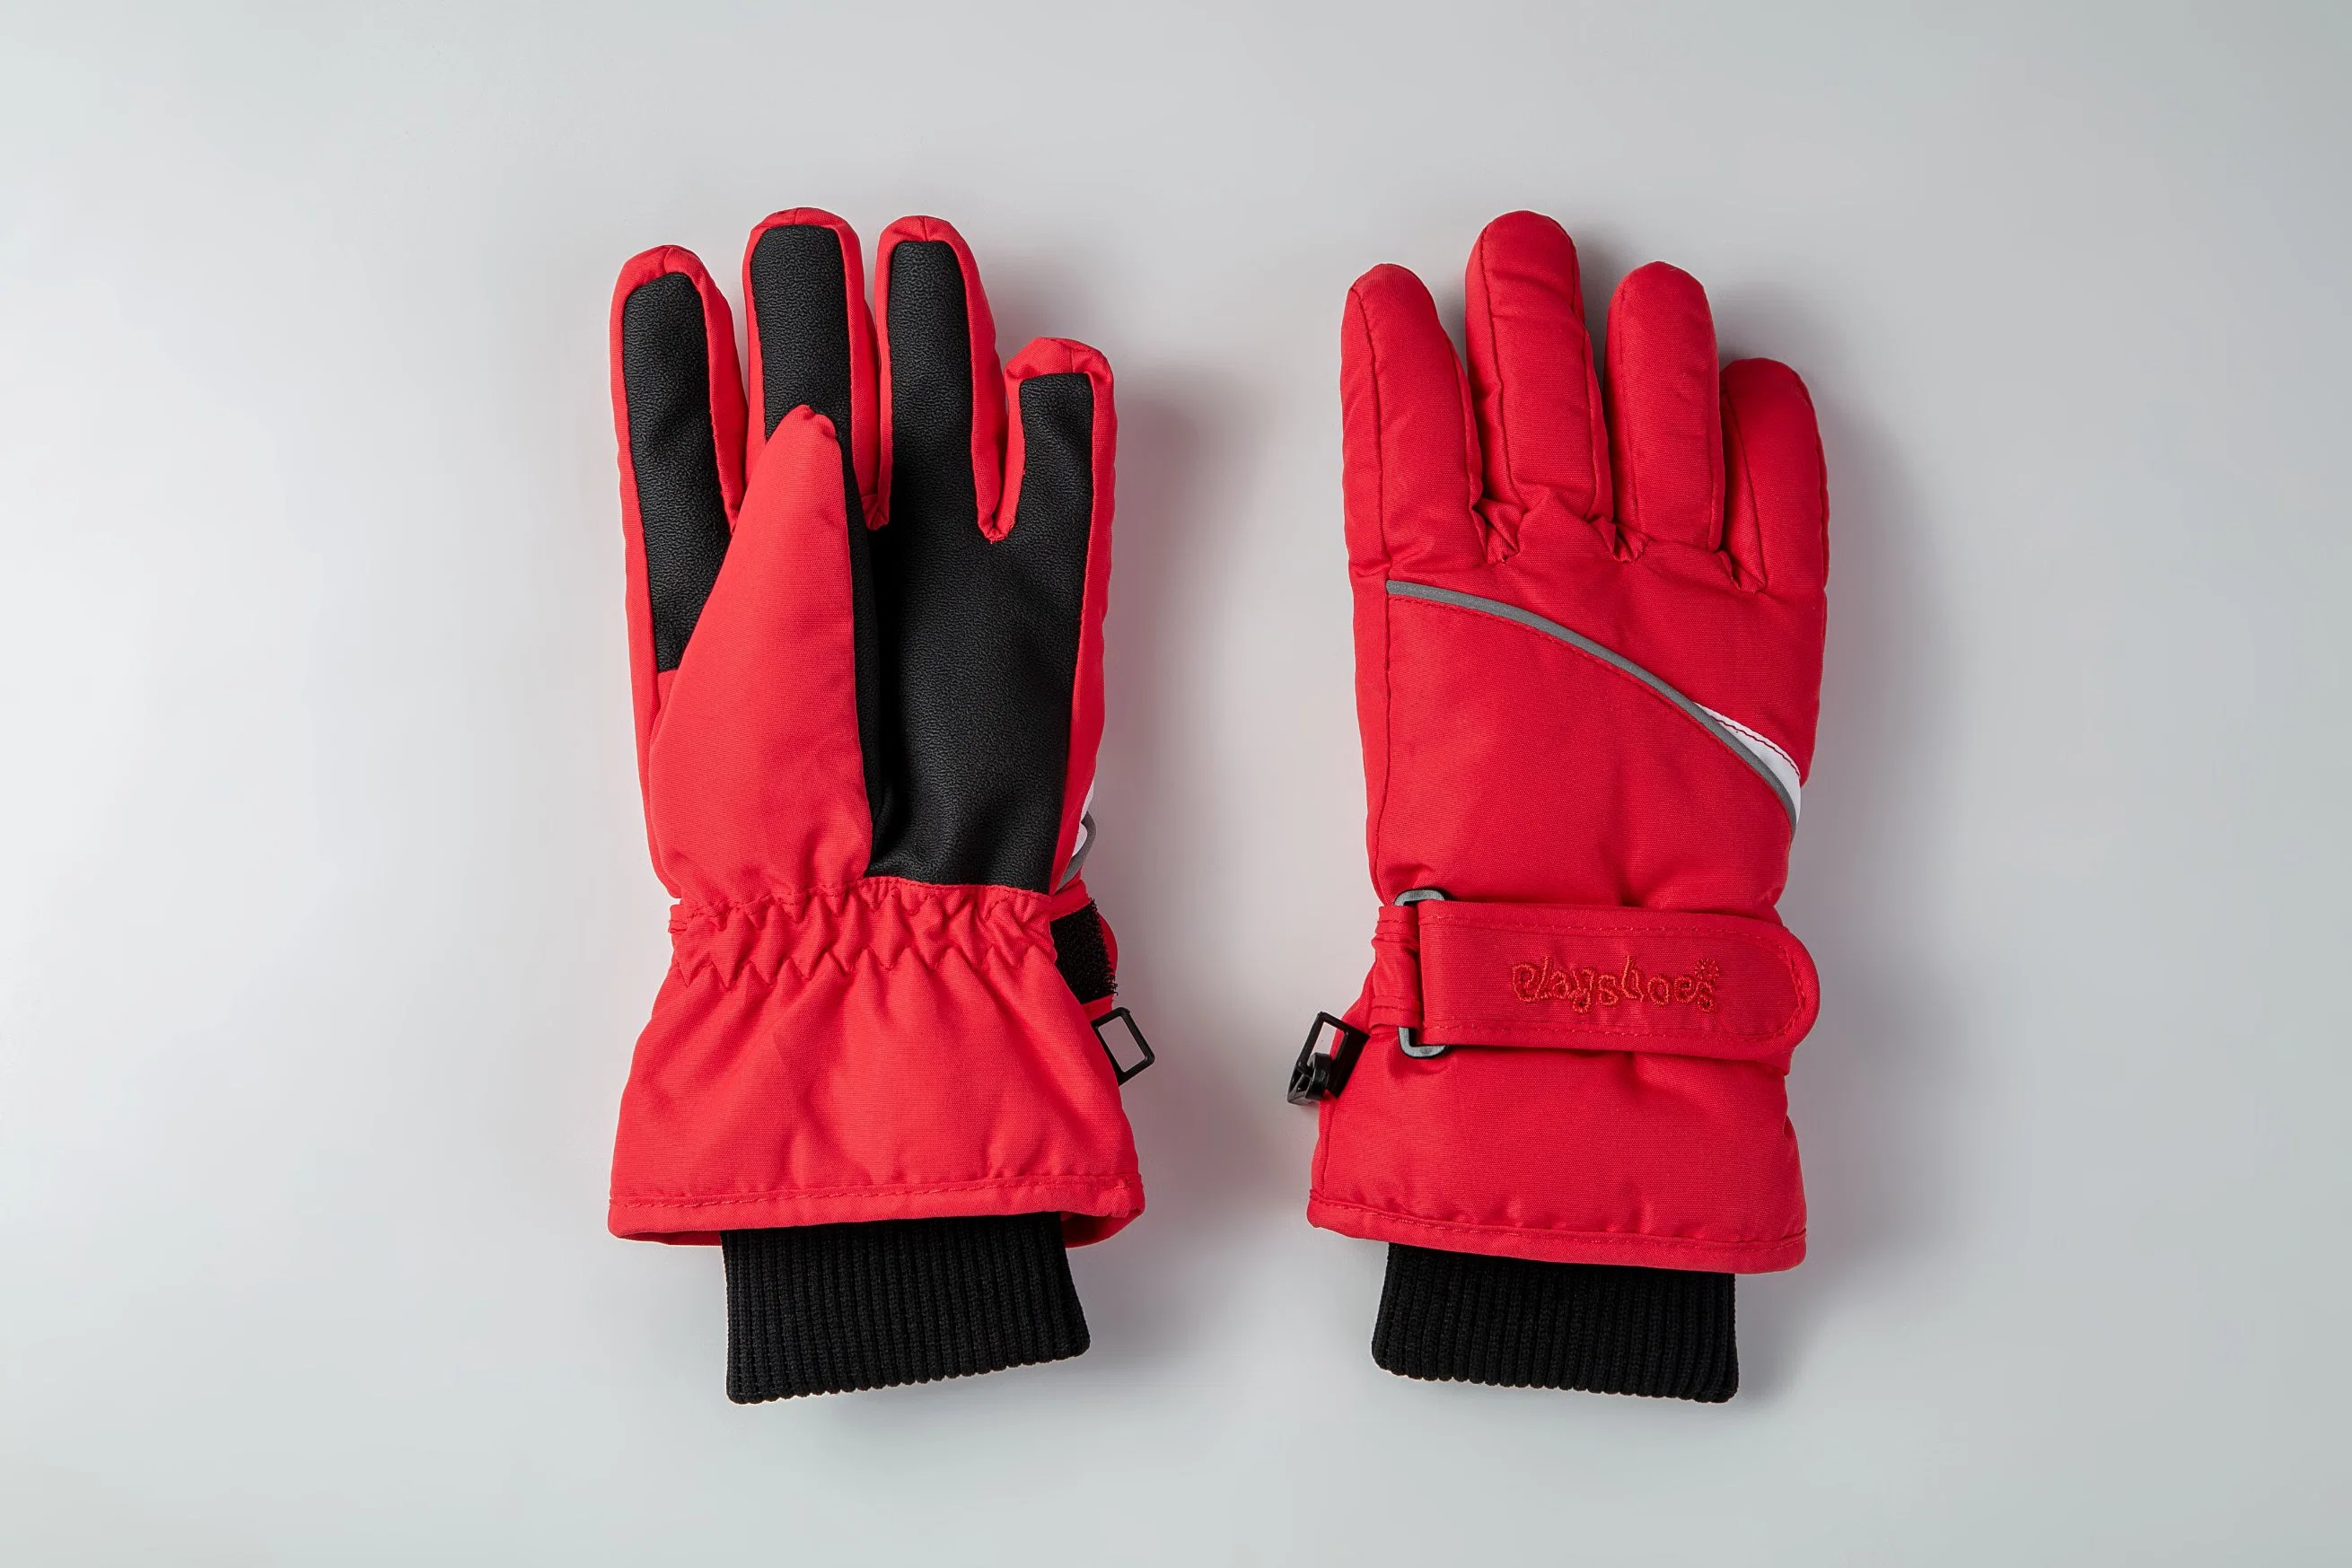 Kinder Skihandschuh/Kinder Fünf Finger Glove/ Kinder Skihandschuh/Kinder Winter Handschuh/Detox Glove/Okotex Glove/Mitten Ski Glove/Winter Glove